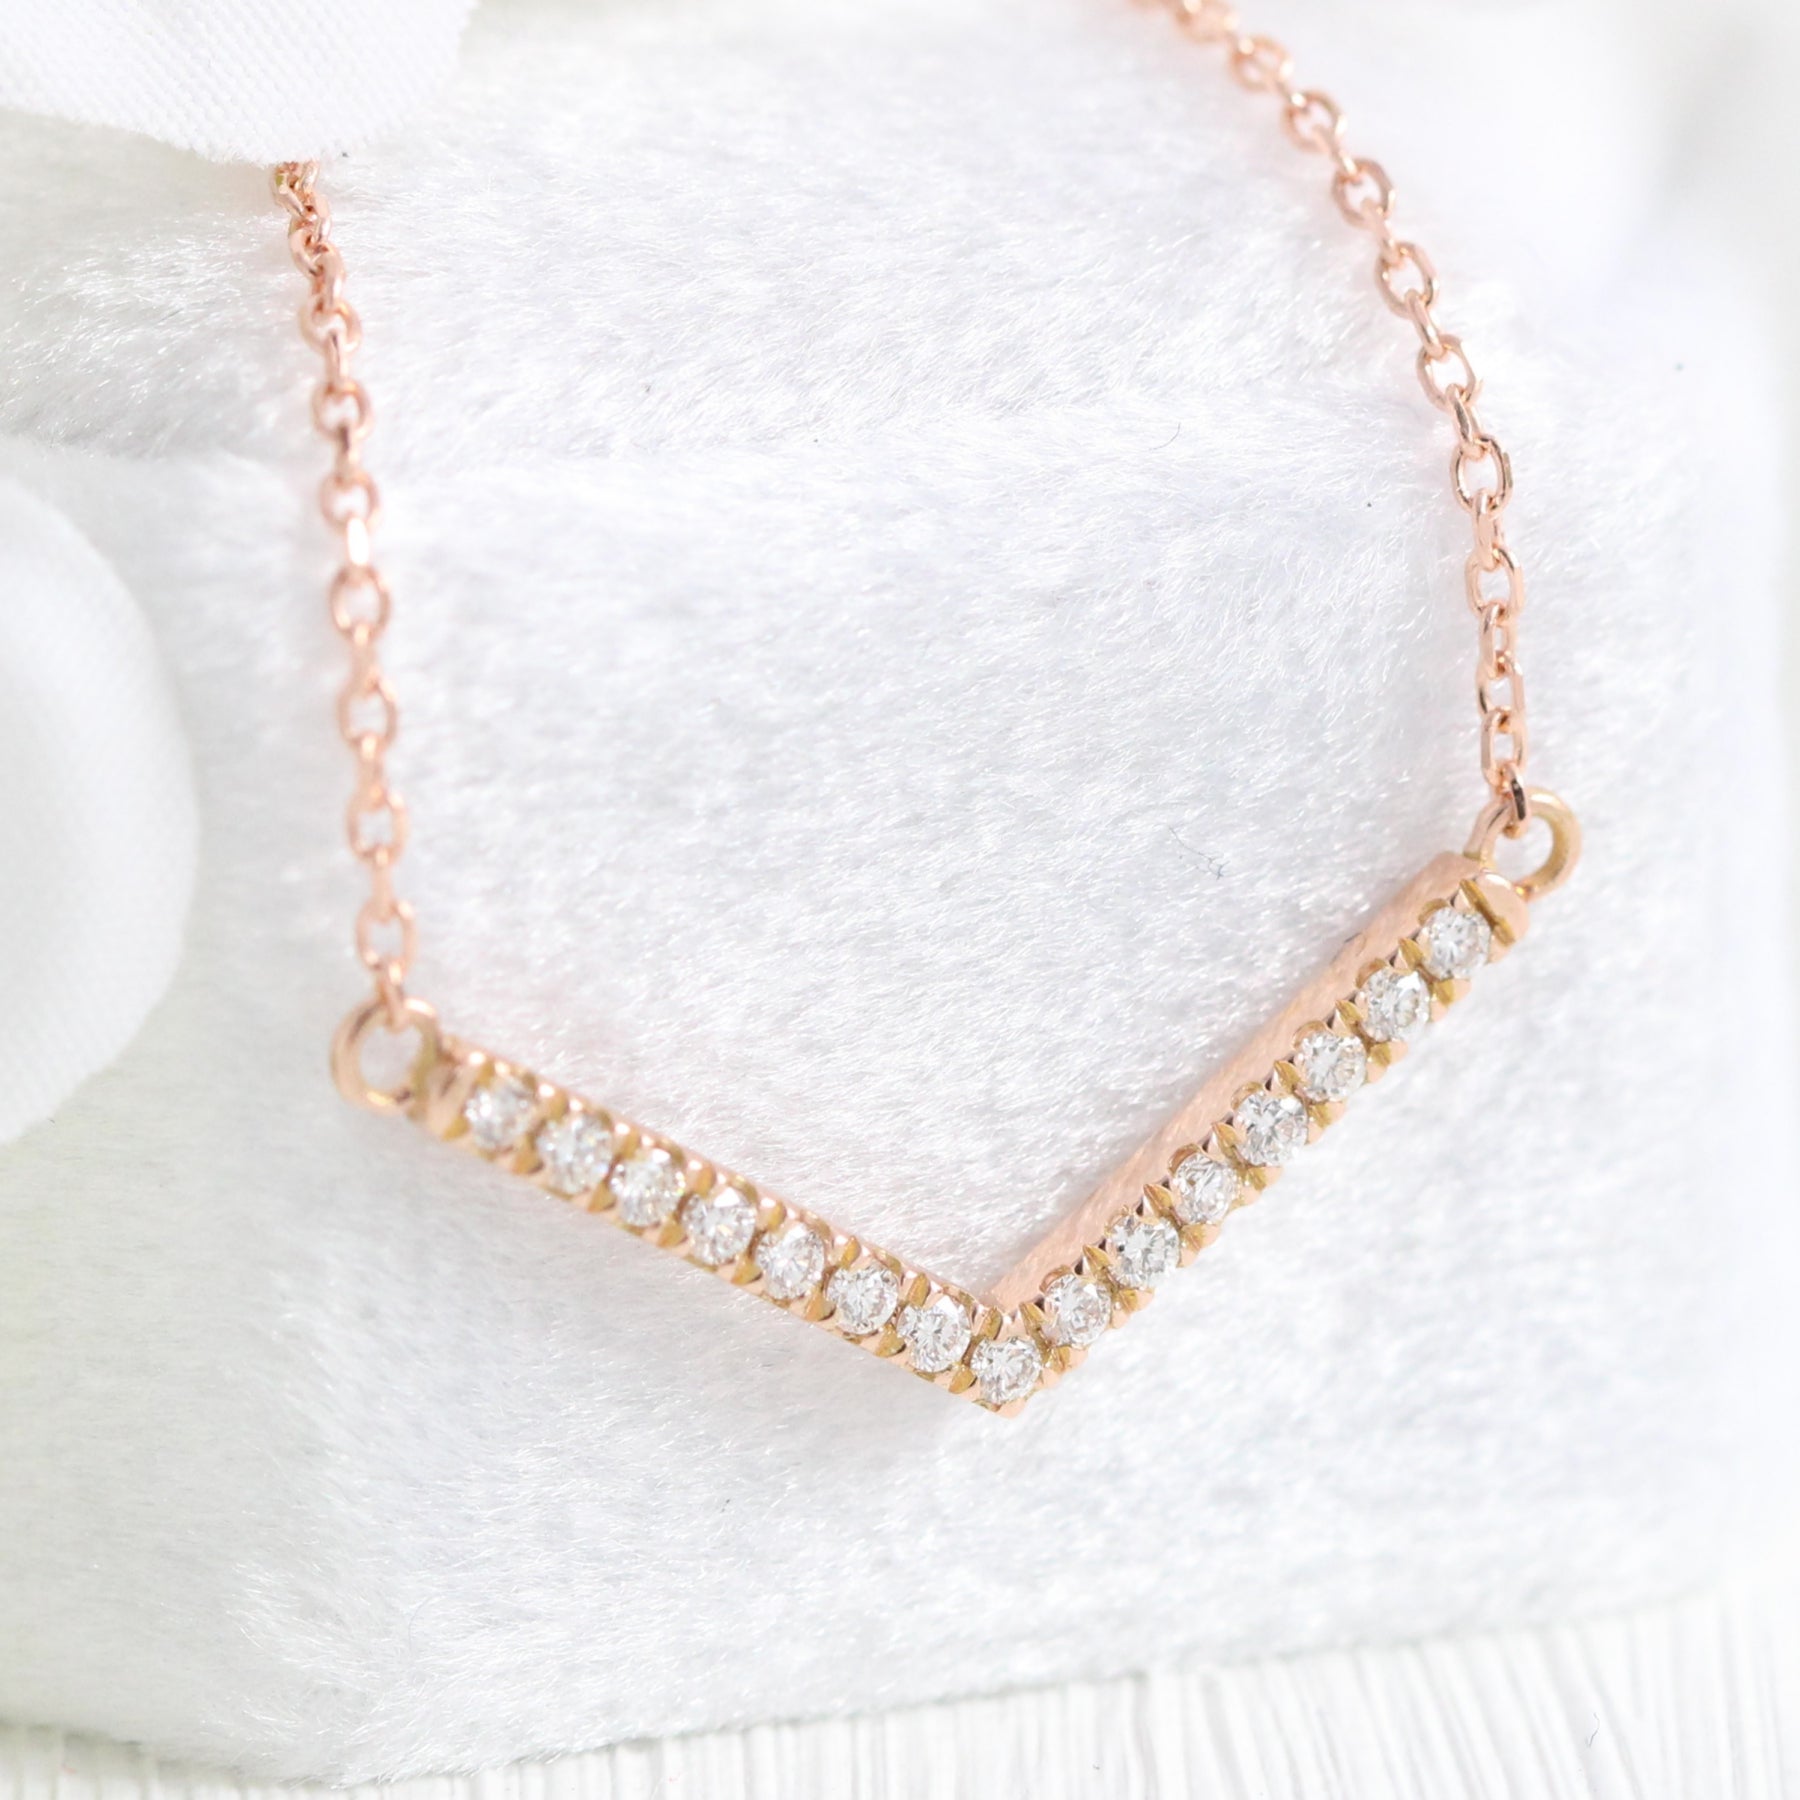 Chevron diamond necklace rose gold V shaped pendant la more design jewelry